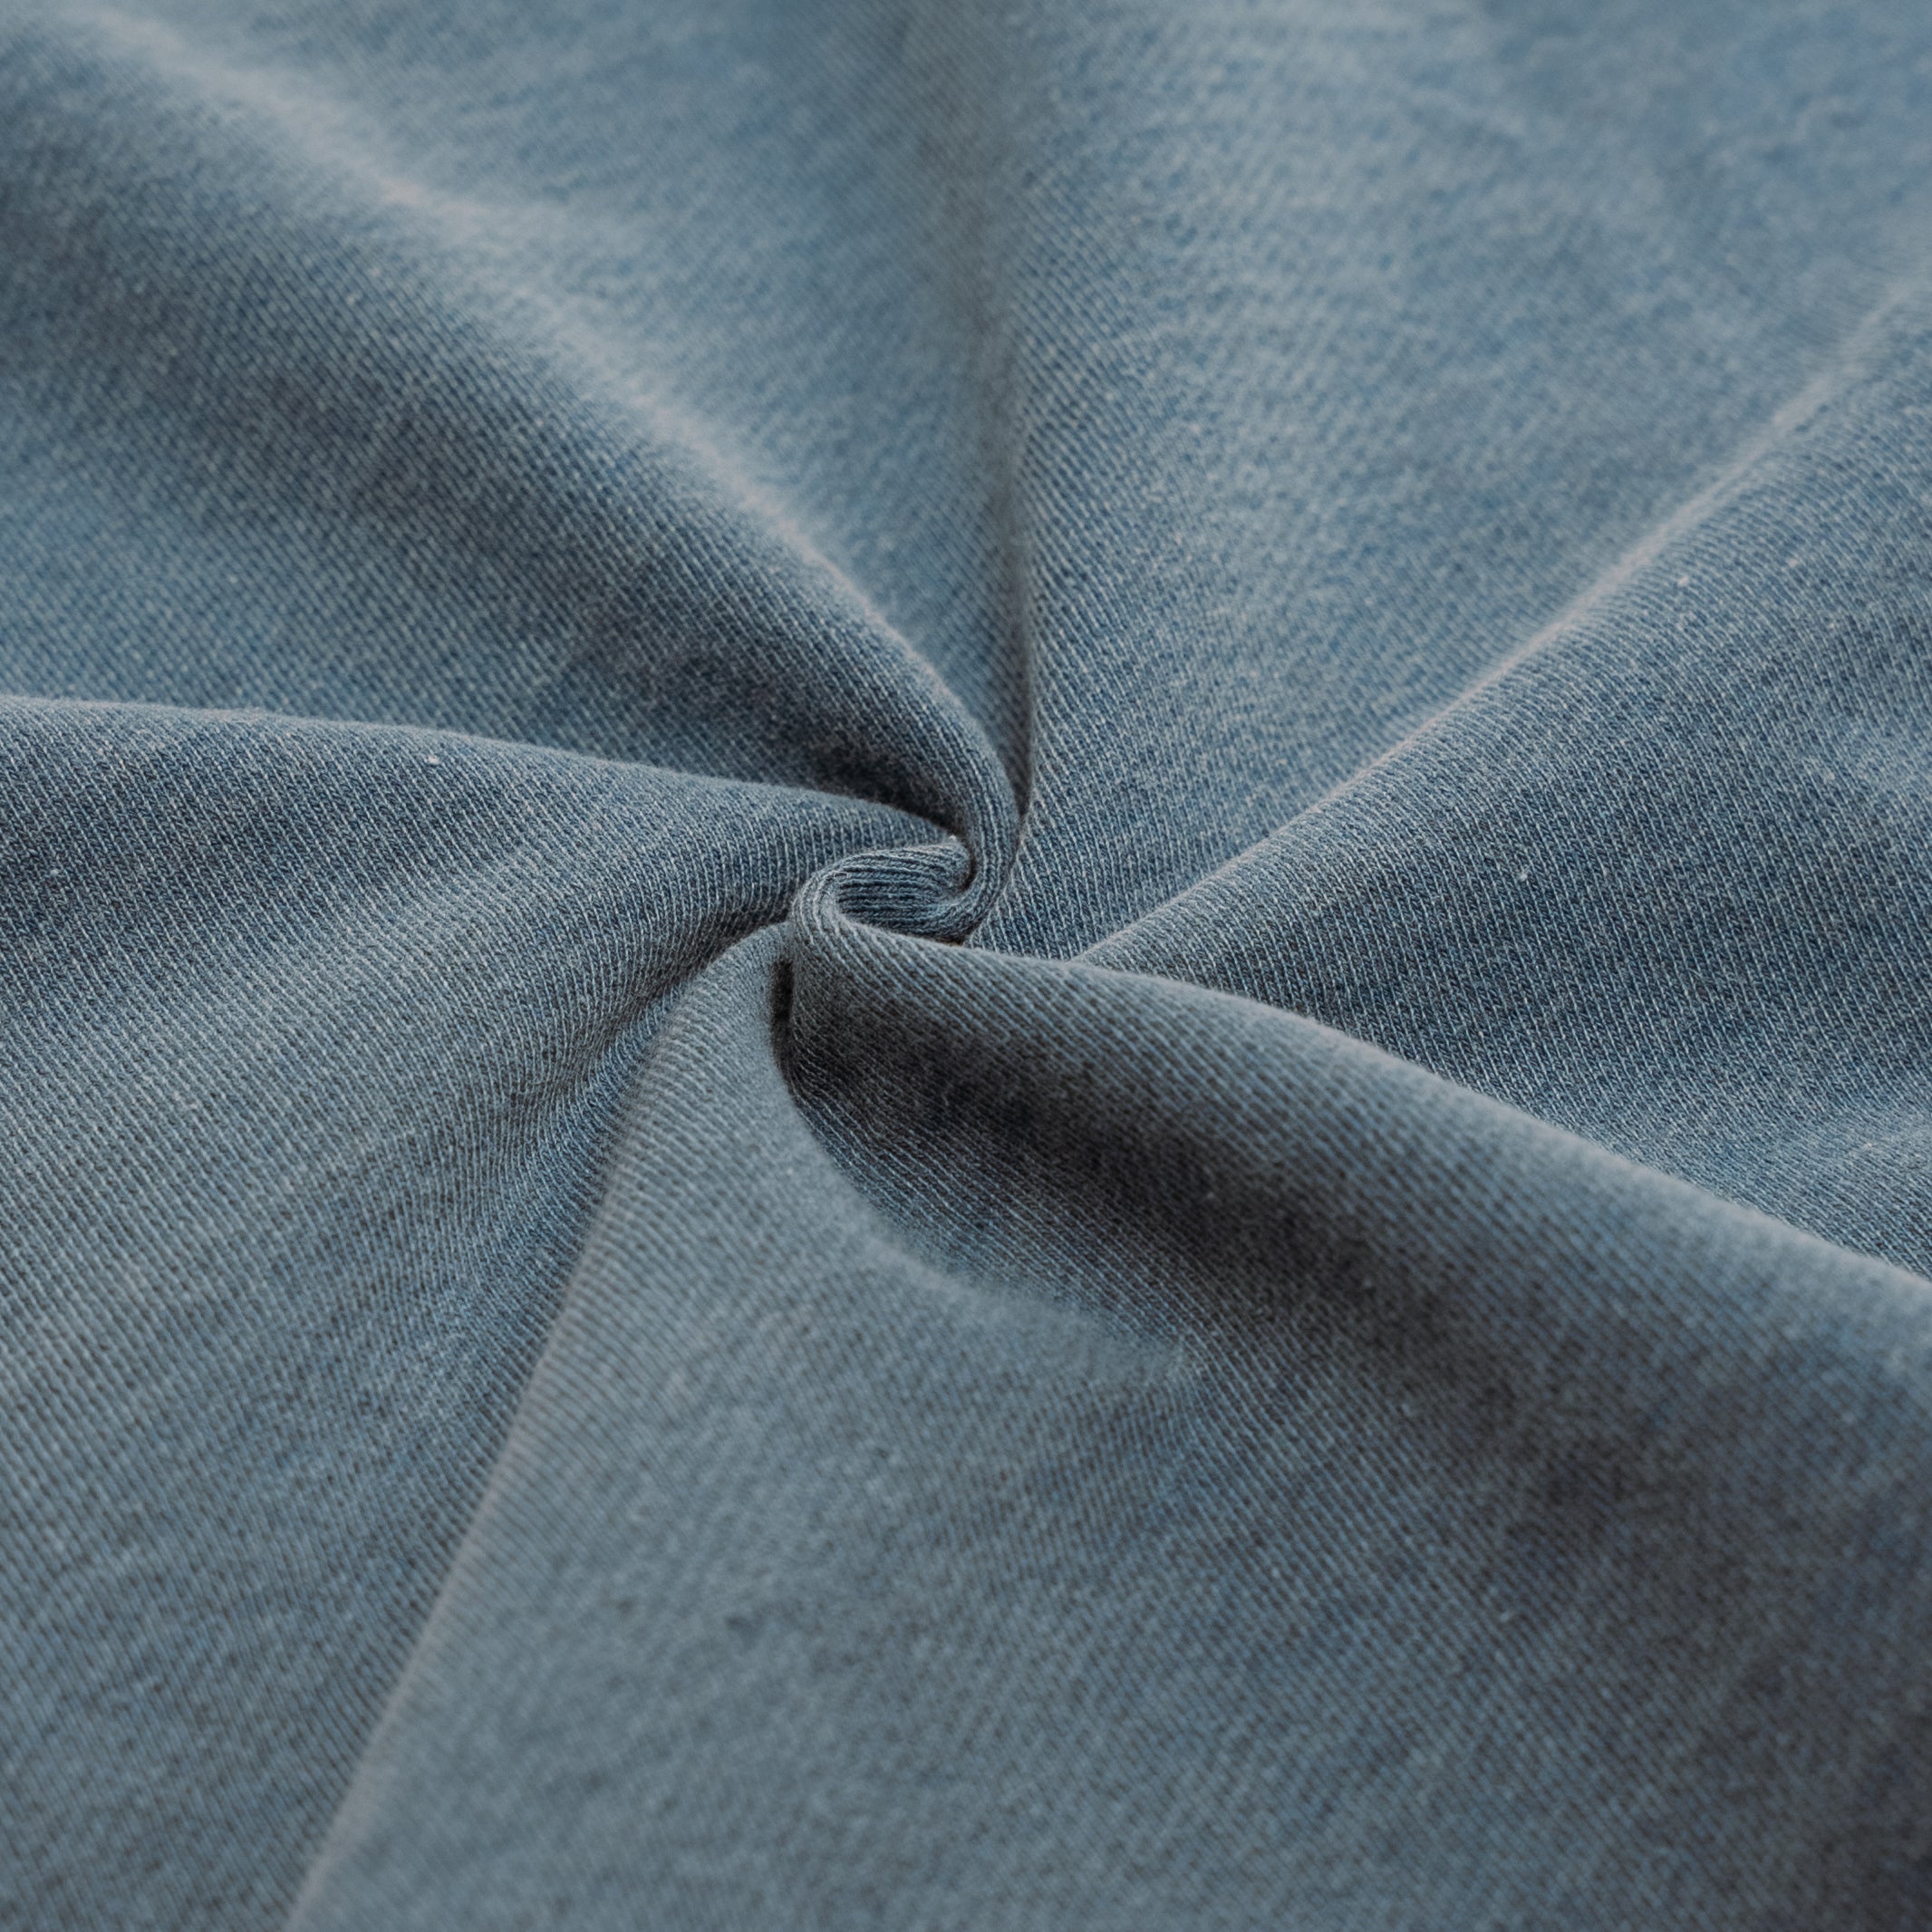 Yard Act - Where’s My Utopia?: Premium Blue Sweater.